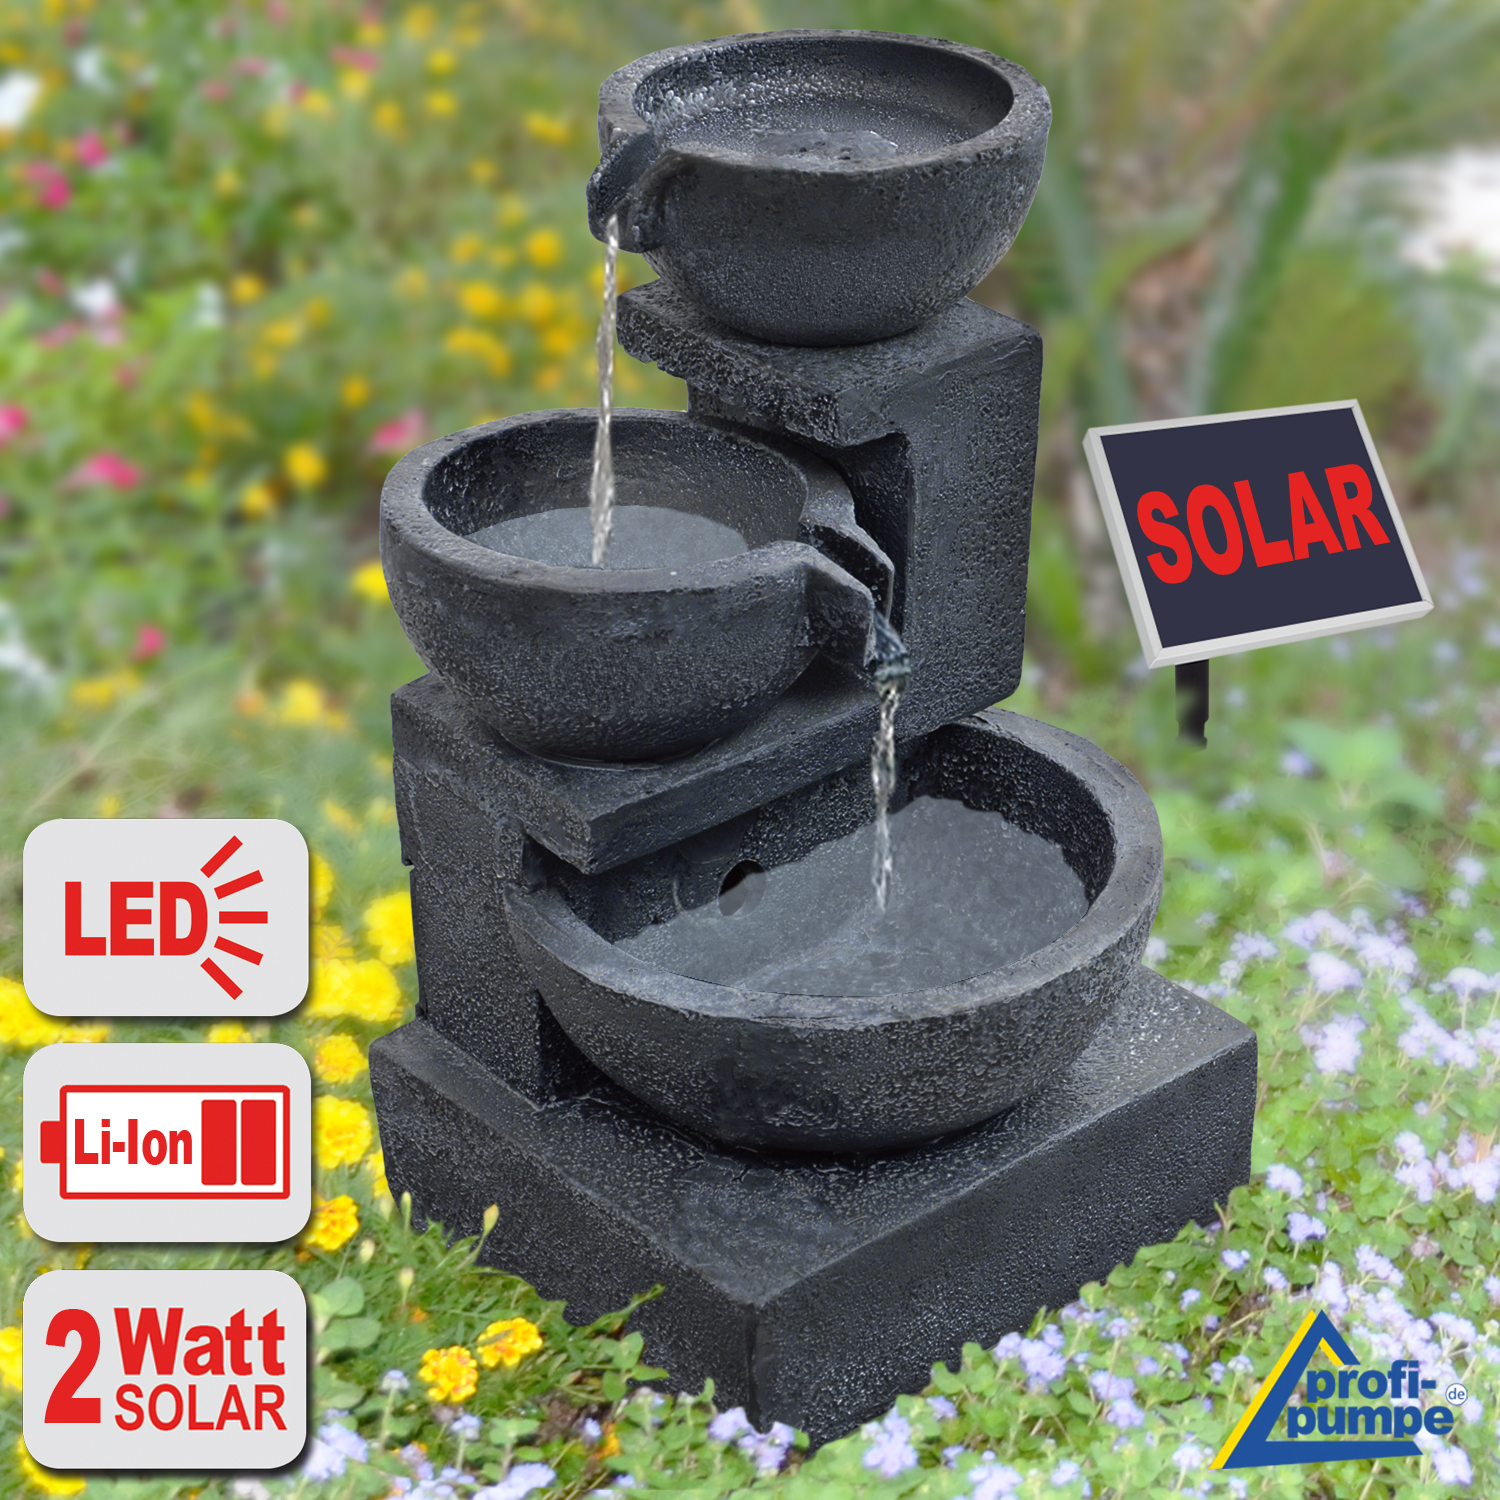 Gartenbrunnen Solar Pumpe mit Akku Wasserspiel LED Licht Brunnen Zierbrunnen 